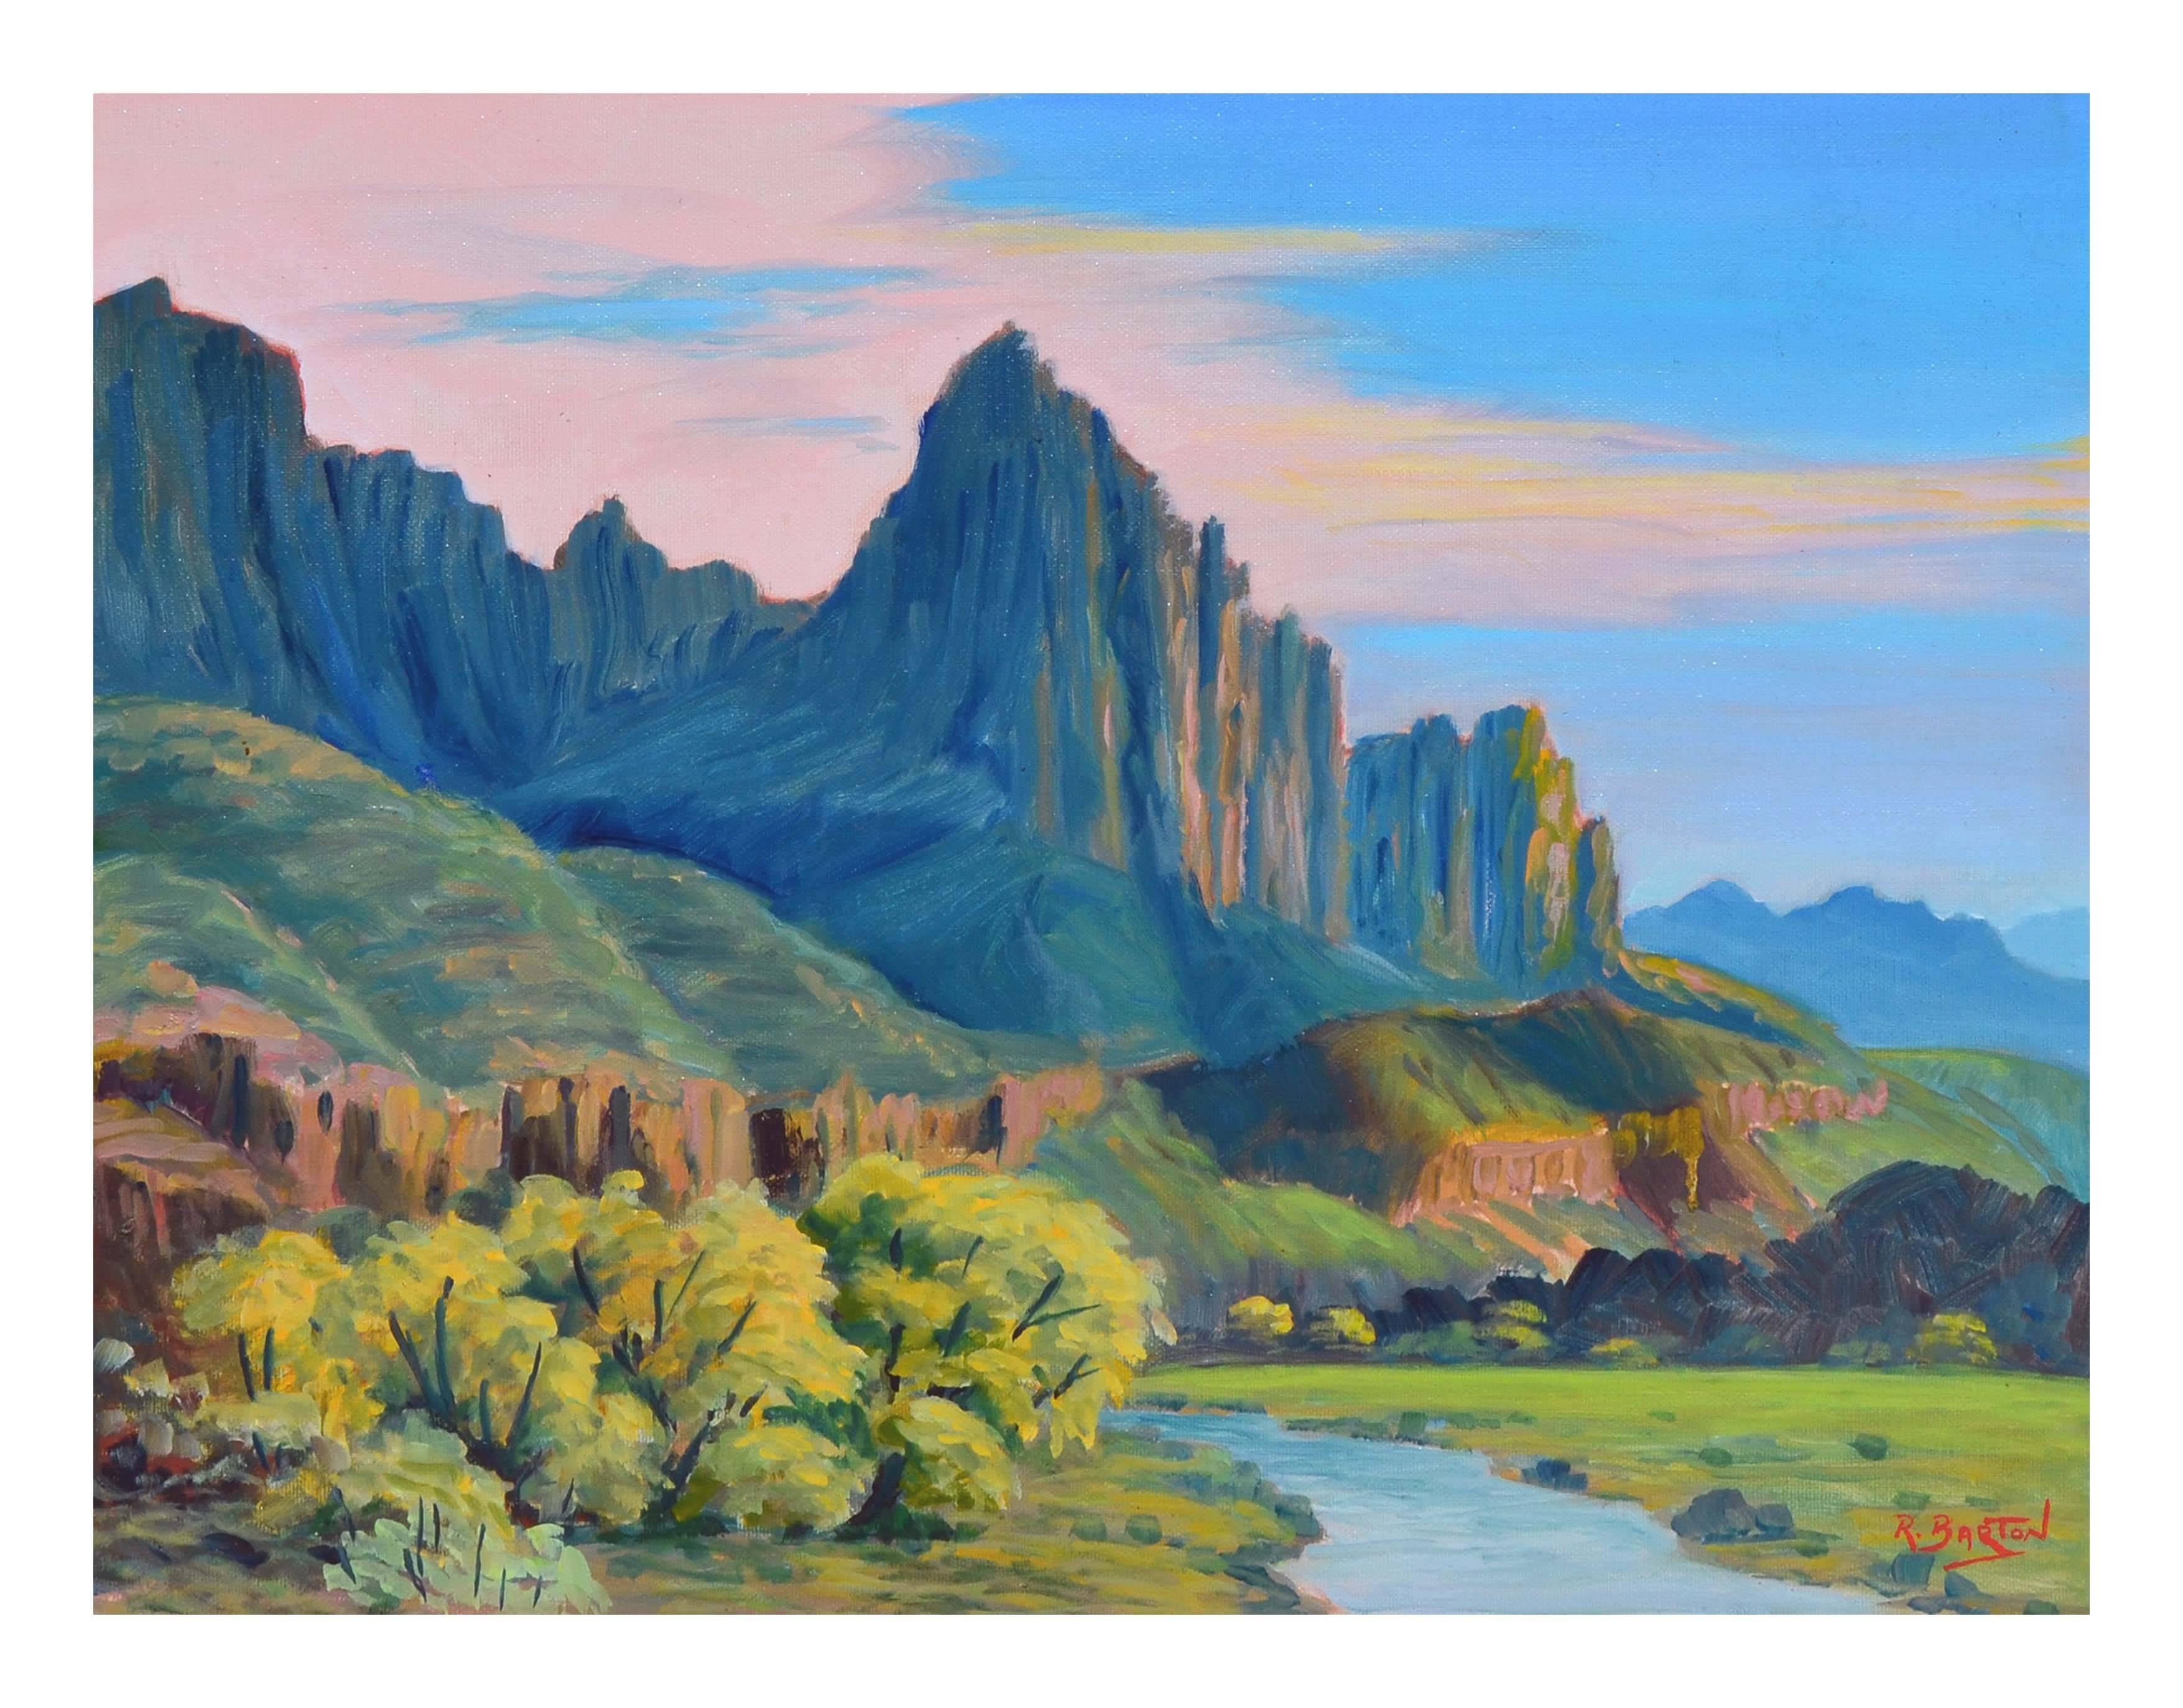 Kings Canyon Pinnacles California - Painting by Ray Barton